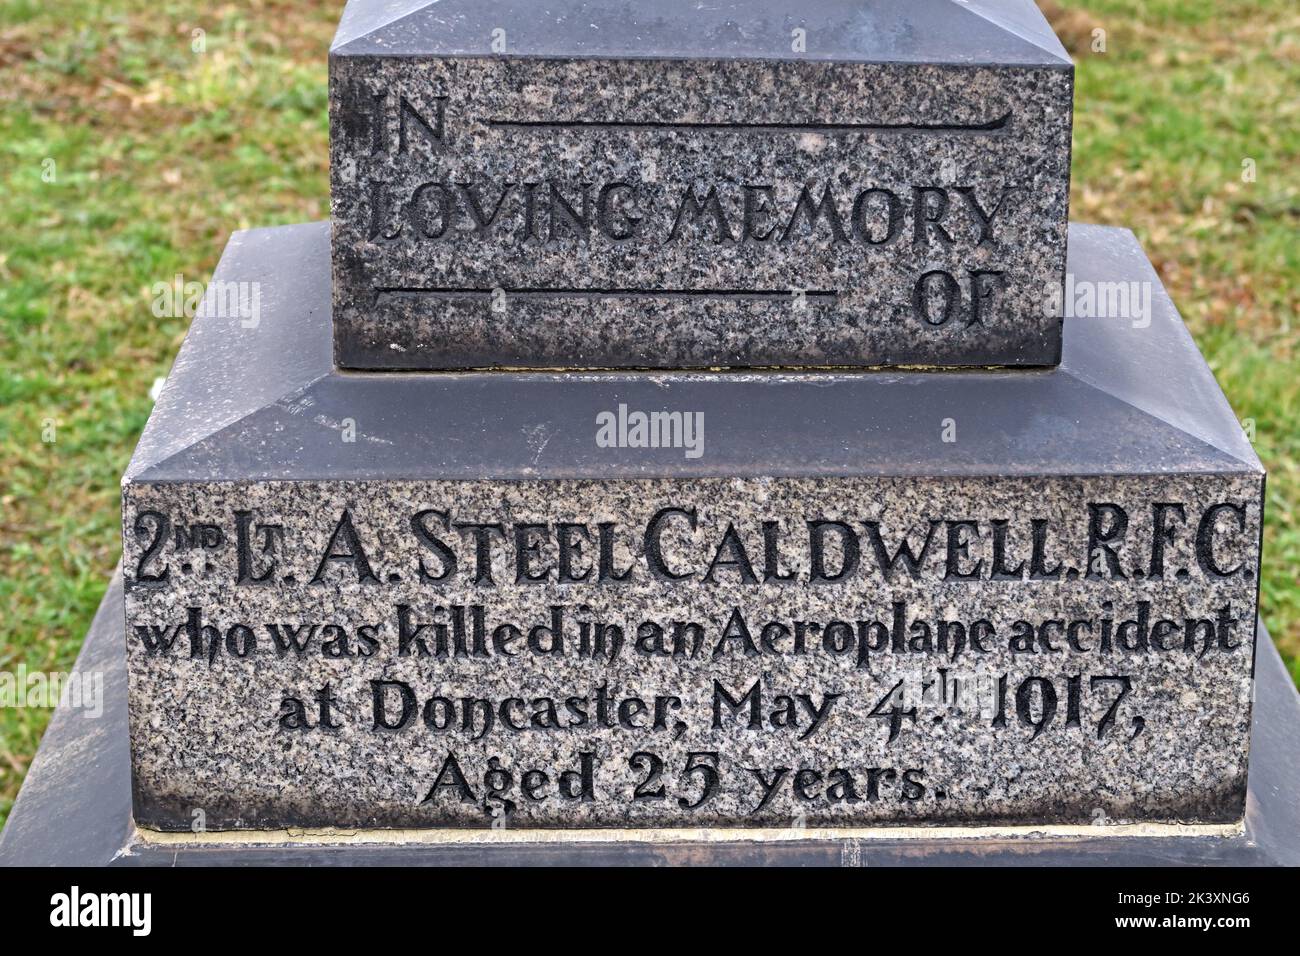 Gravetone, dans la mémoire aimante de 2nd Lt A Steel Caldwell RFC, qui a été tué dans un accident d'avion à Doncaster 4 mai 1917 Banque D'Images